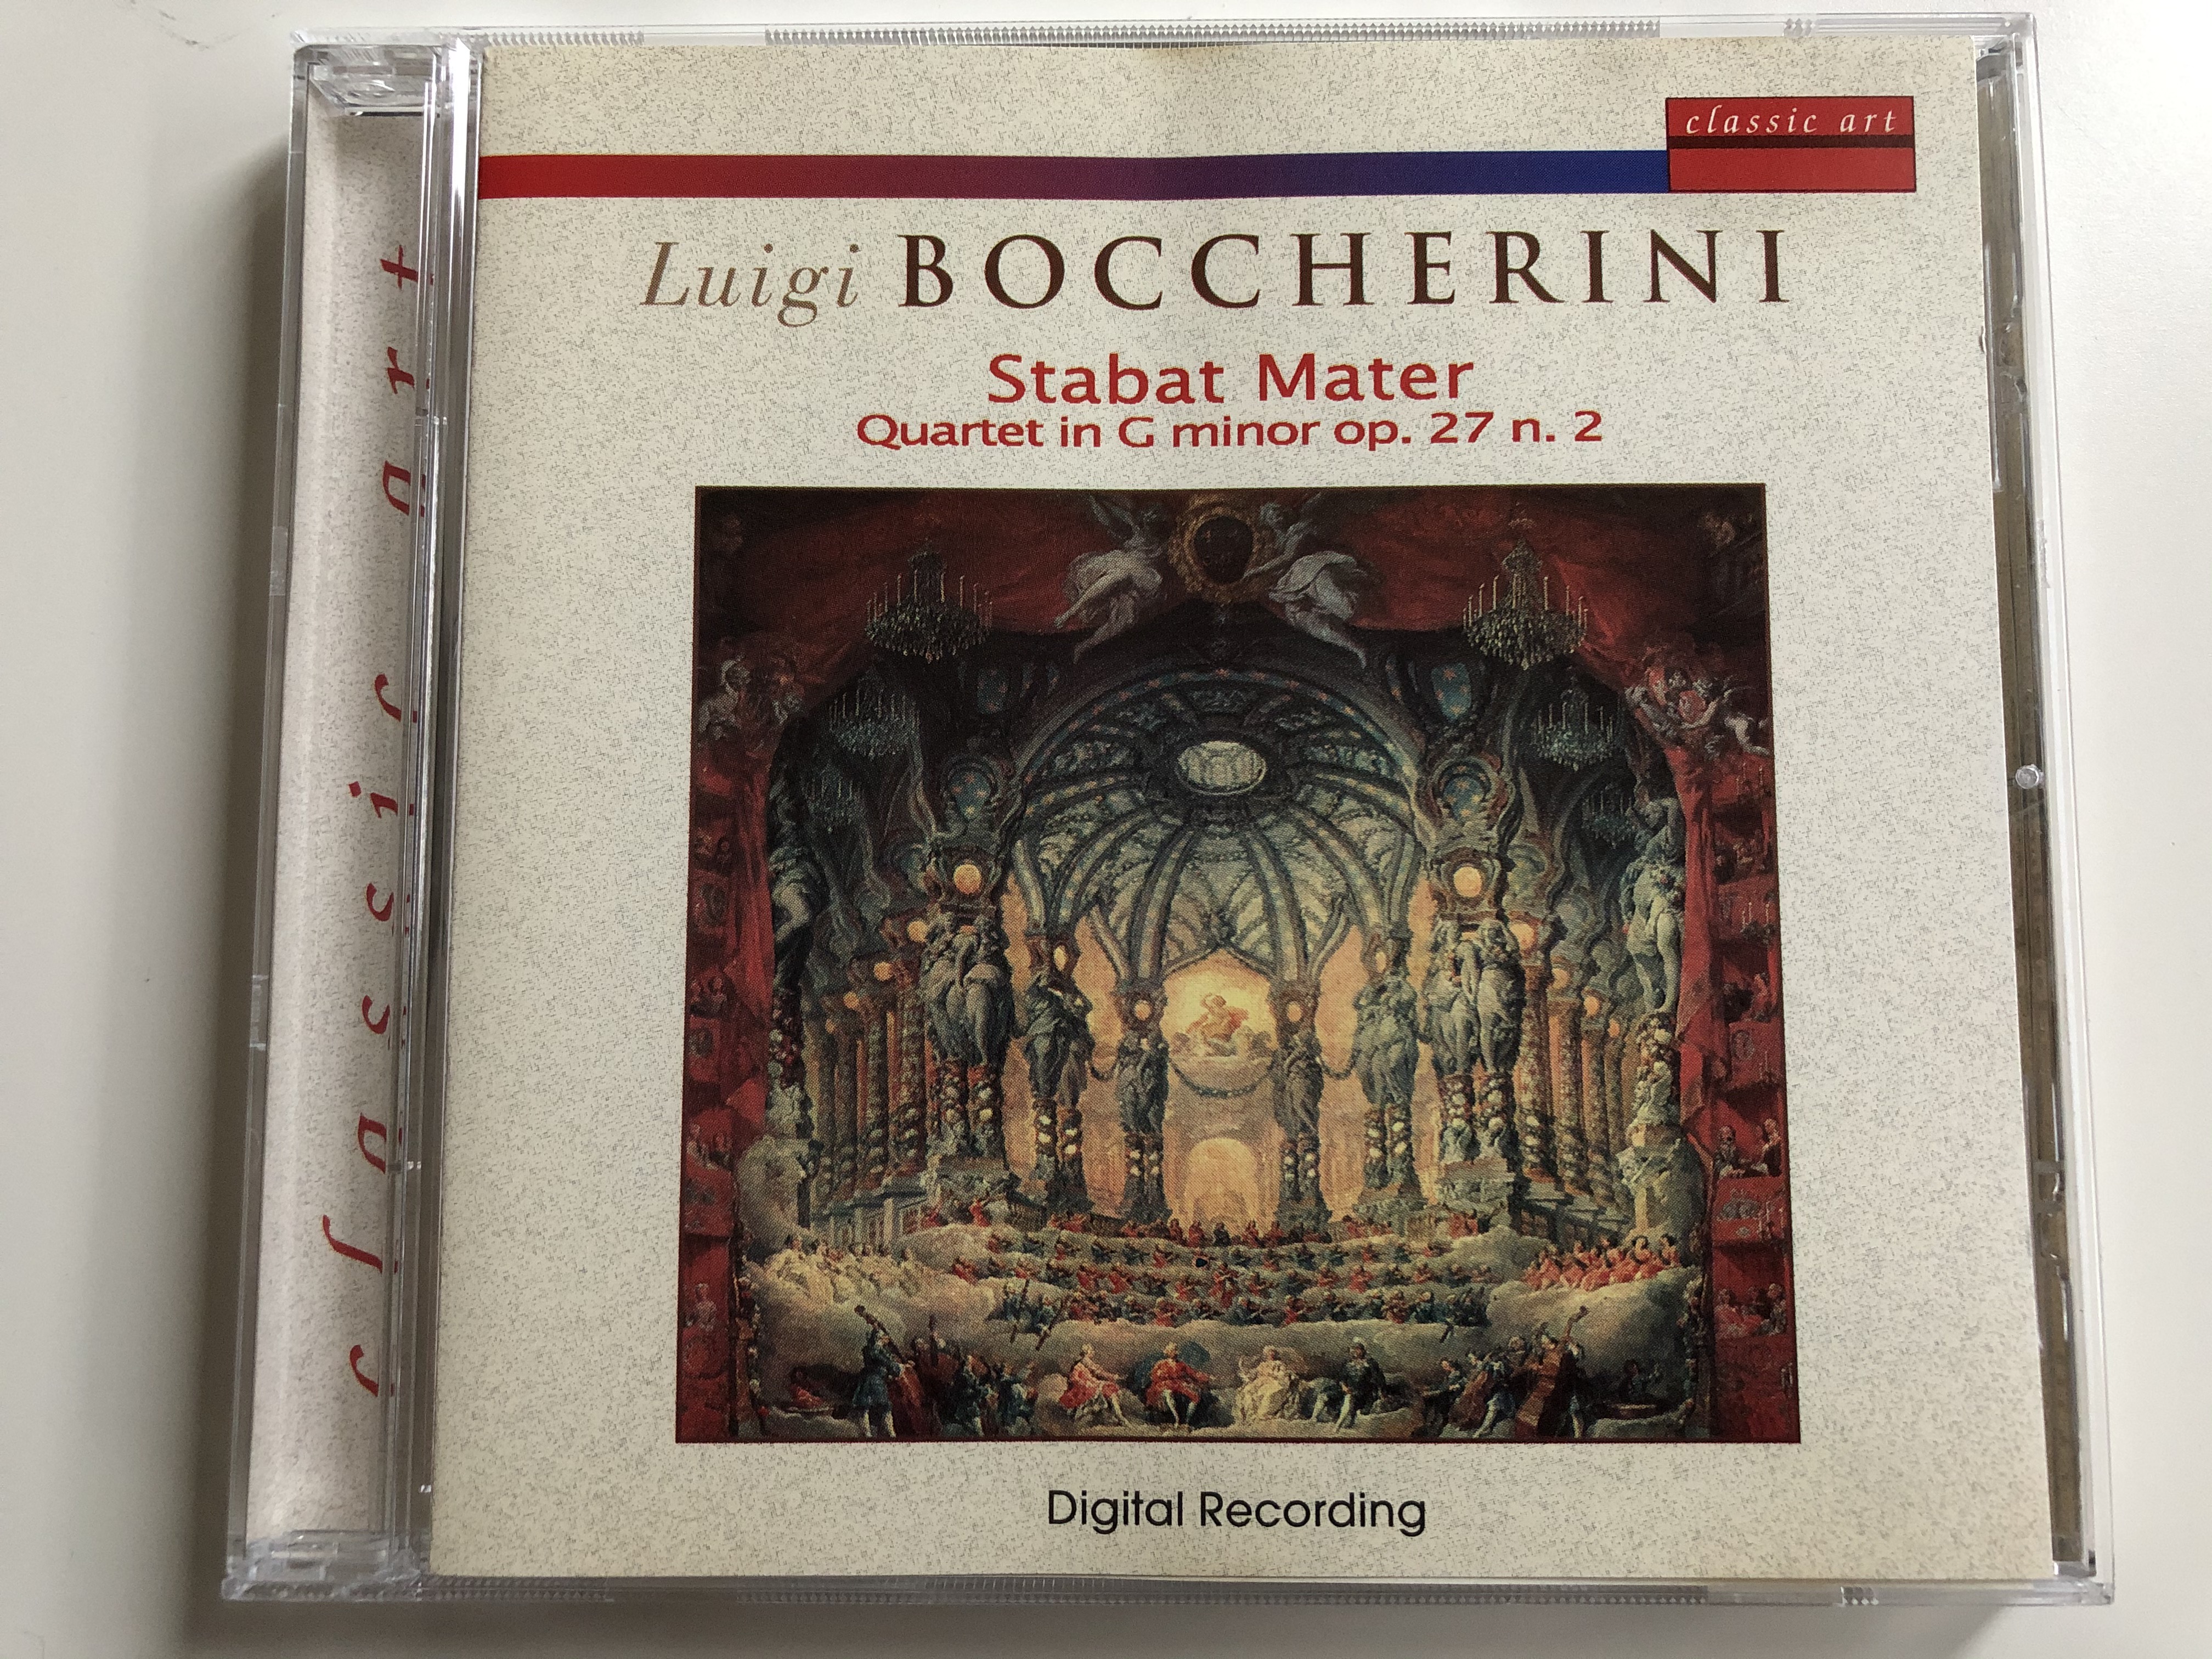 luigi-boccherini-stabat-mater-quartet-in-g-minor-op.-27-n.-2-classic-art-audio-cd-1999-ca-112-1-.jpg